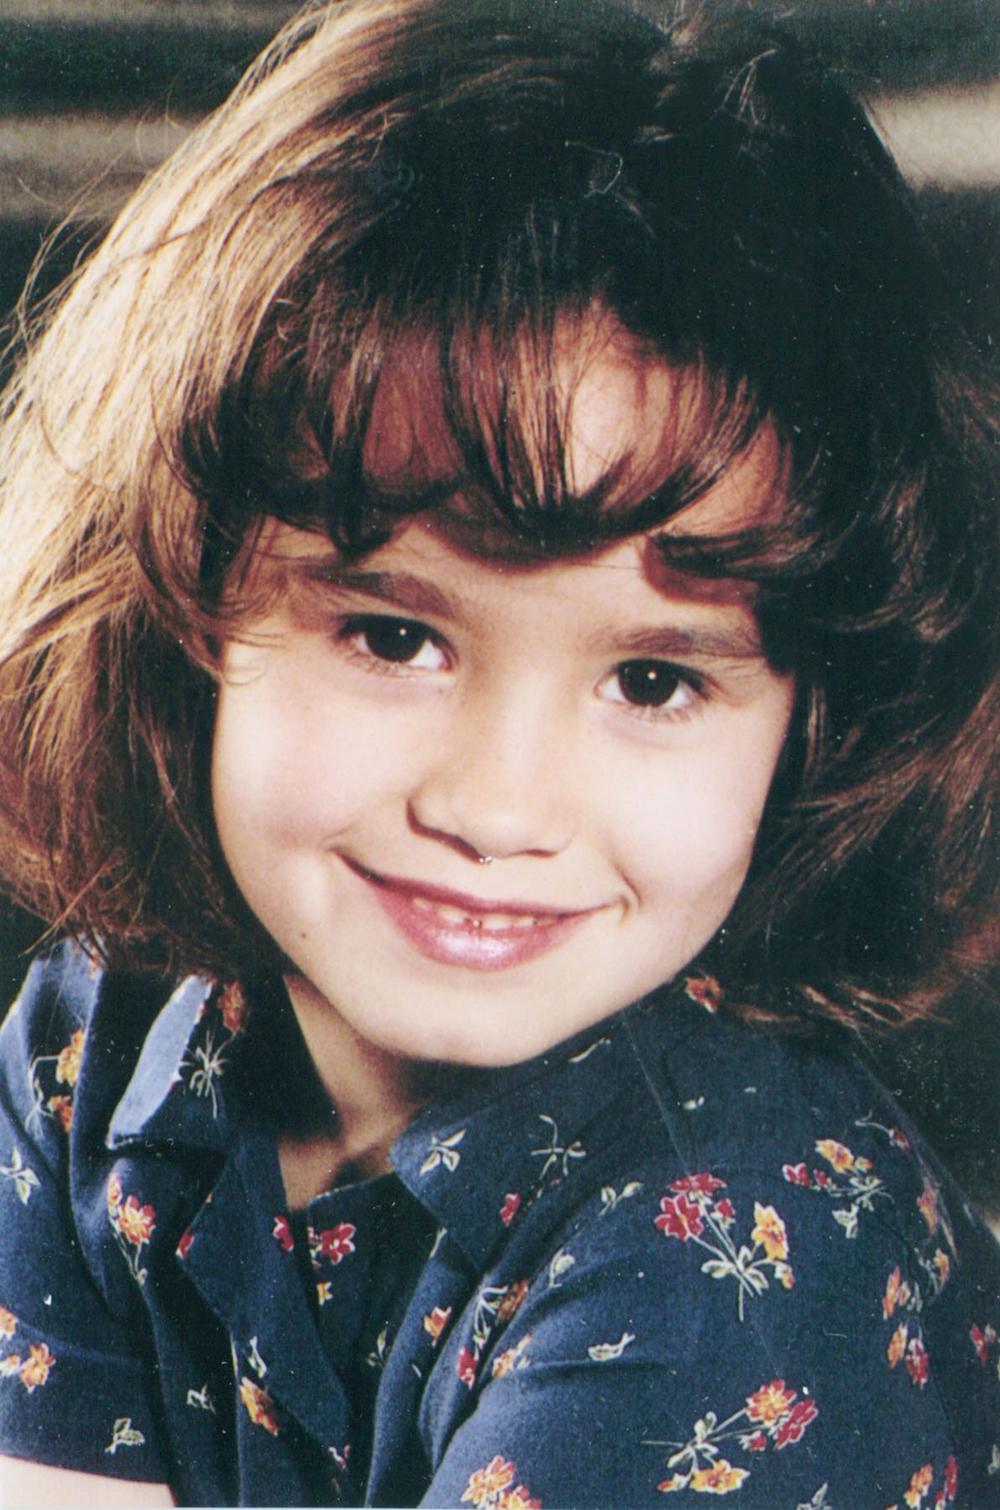 <p><strong>Demetrija Devon Lovato</strong>, poznatija kao samo <strong>Demi Lovato</strong>, tekuće godine 20. avgusta proslavlja 25. rođendan! Mlada lepotica izuzetno je uspešna na polju muzike i glume, te iako negde kažu da tek u 25. život donosi "one prave stvari", <strong>Demi </strong>ništa nije čekala, već je još kao veoma mlada "ustala" i uzela ono što je njeno. Nakon opake borbe sa zavisnošću, izuzetno tužnog rastanka na polju ljubavi... <strong>Demi </strong>je i dalje jedna od najuticajnijih mladih zvezda na svetu, te ko zna šta će nam još predstaviti u budućnosti.</p>